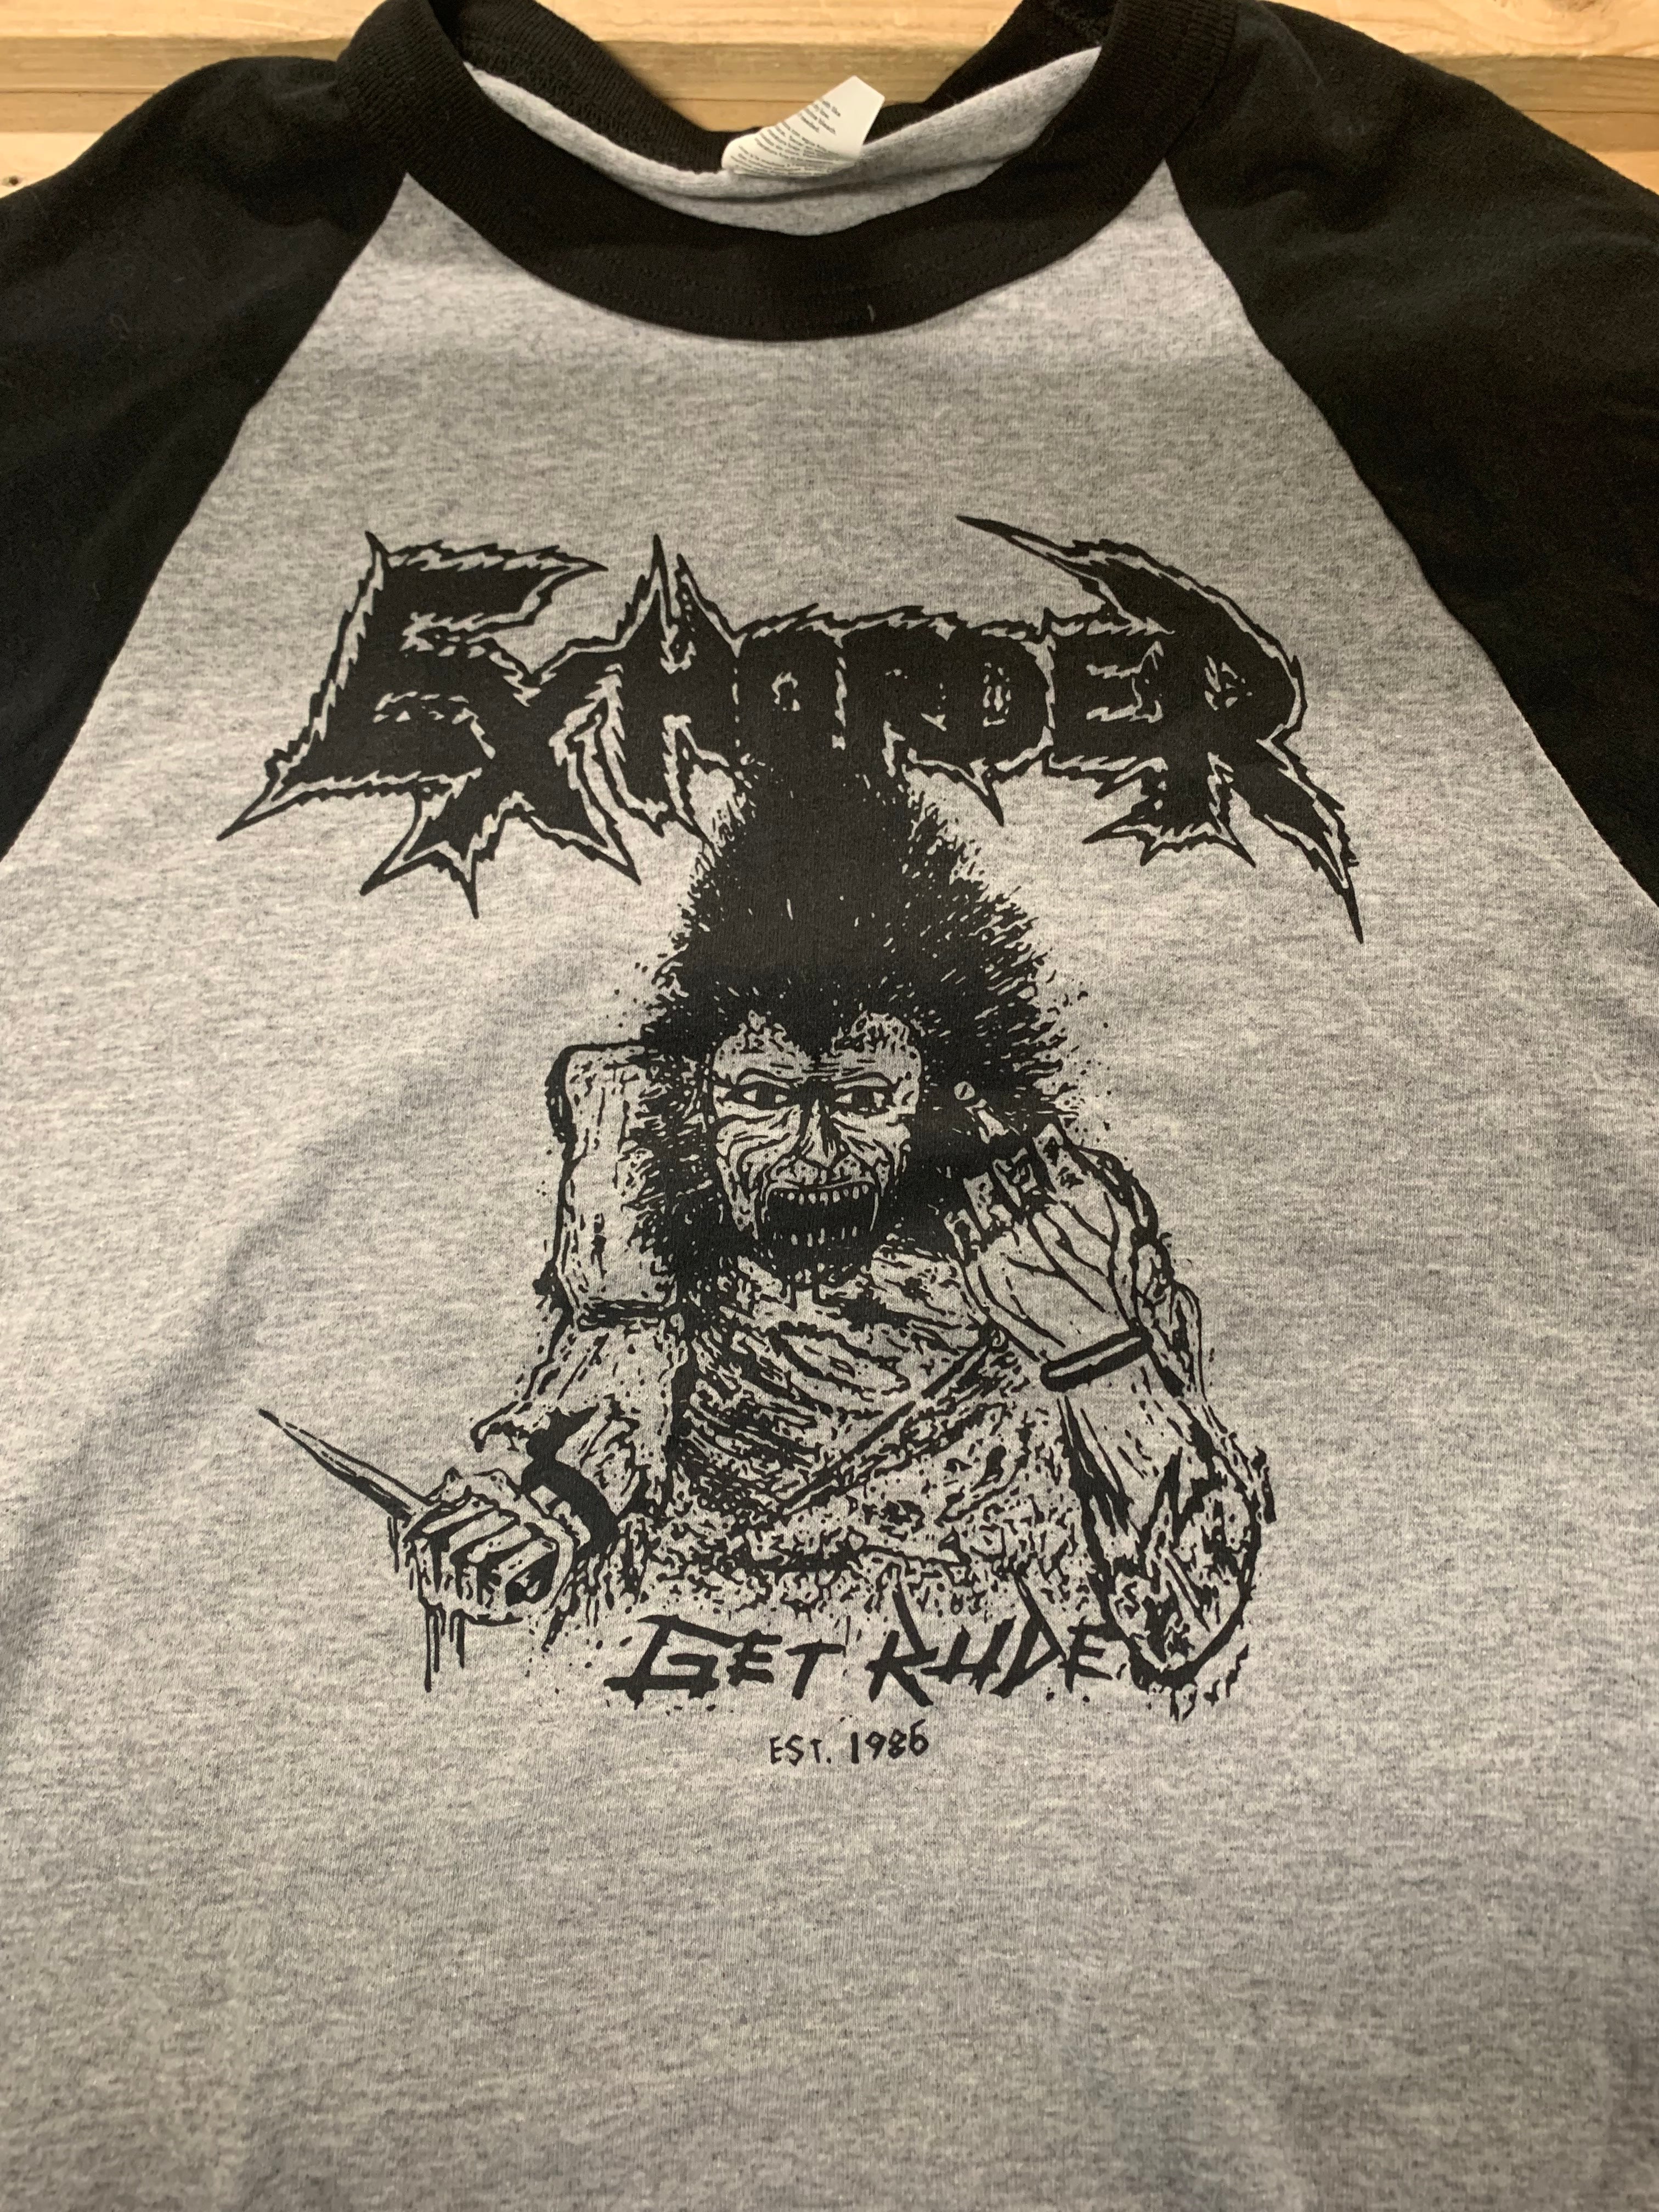 Exhorder Get Rude 3/4 T-Shirt, Gray, M